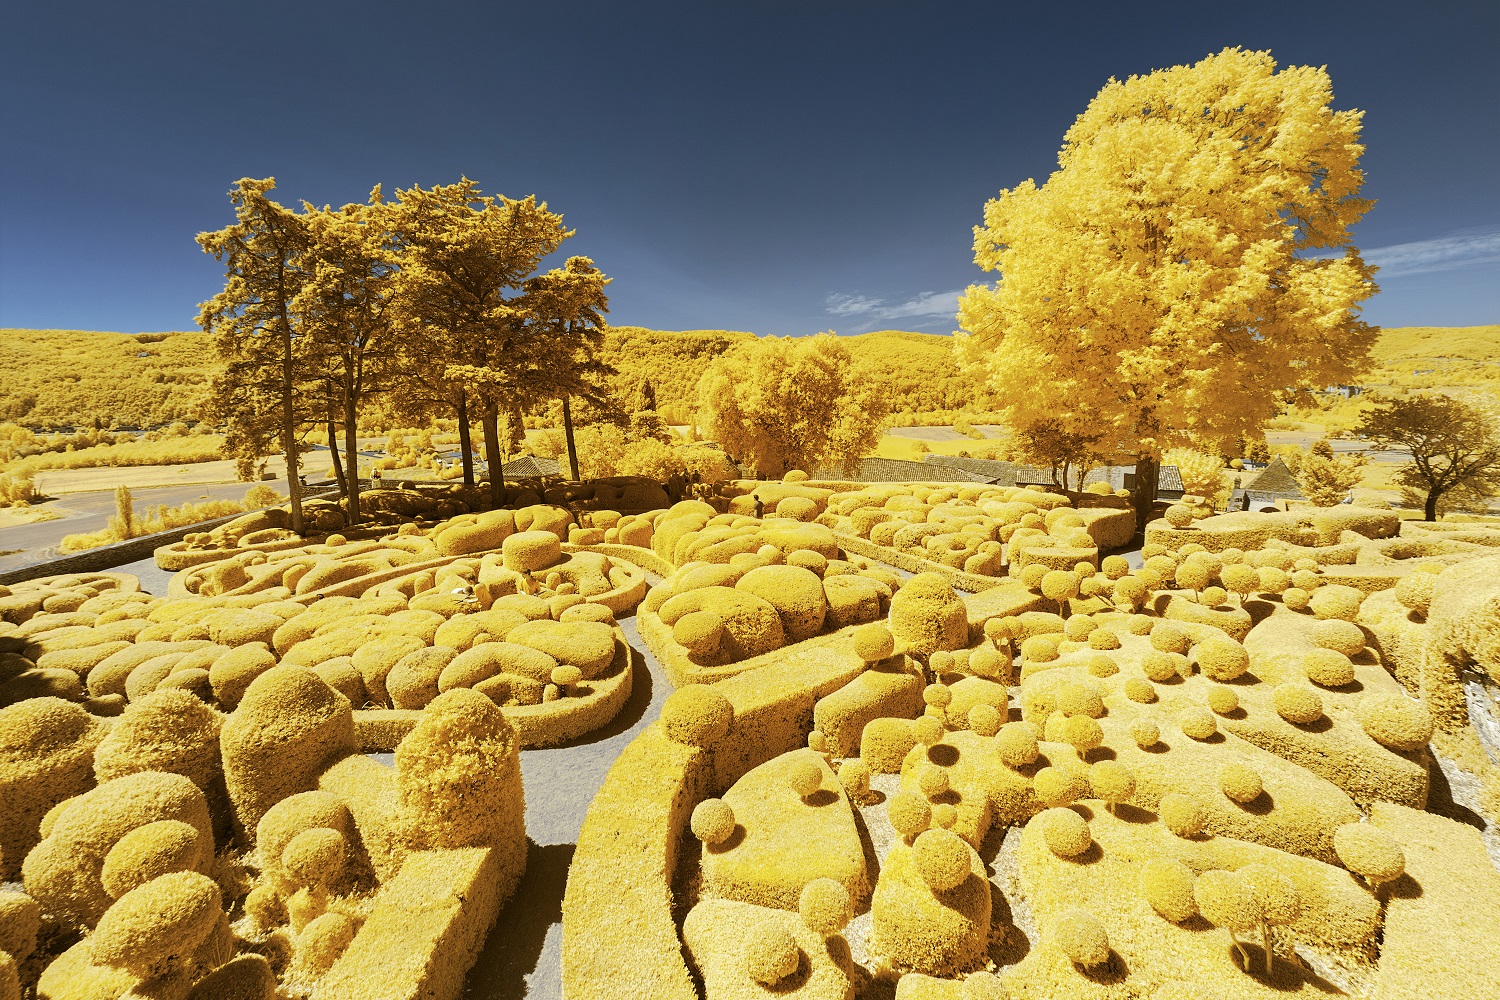 iDesign | Lạc vào thế giới khác qua bộ ảnh thiên nhiên màu vàng của NAG  người Pháp